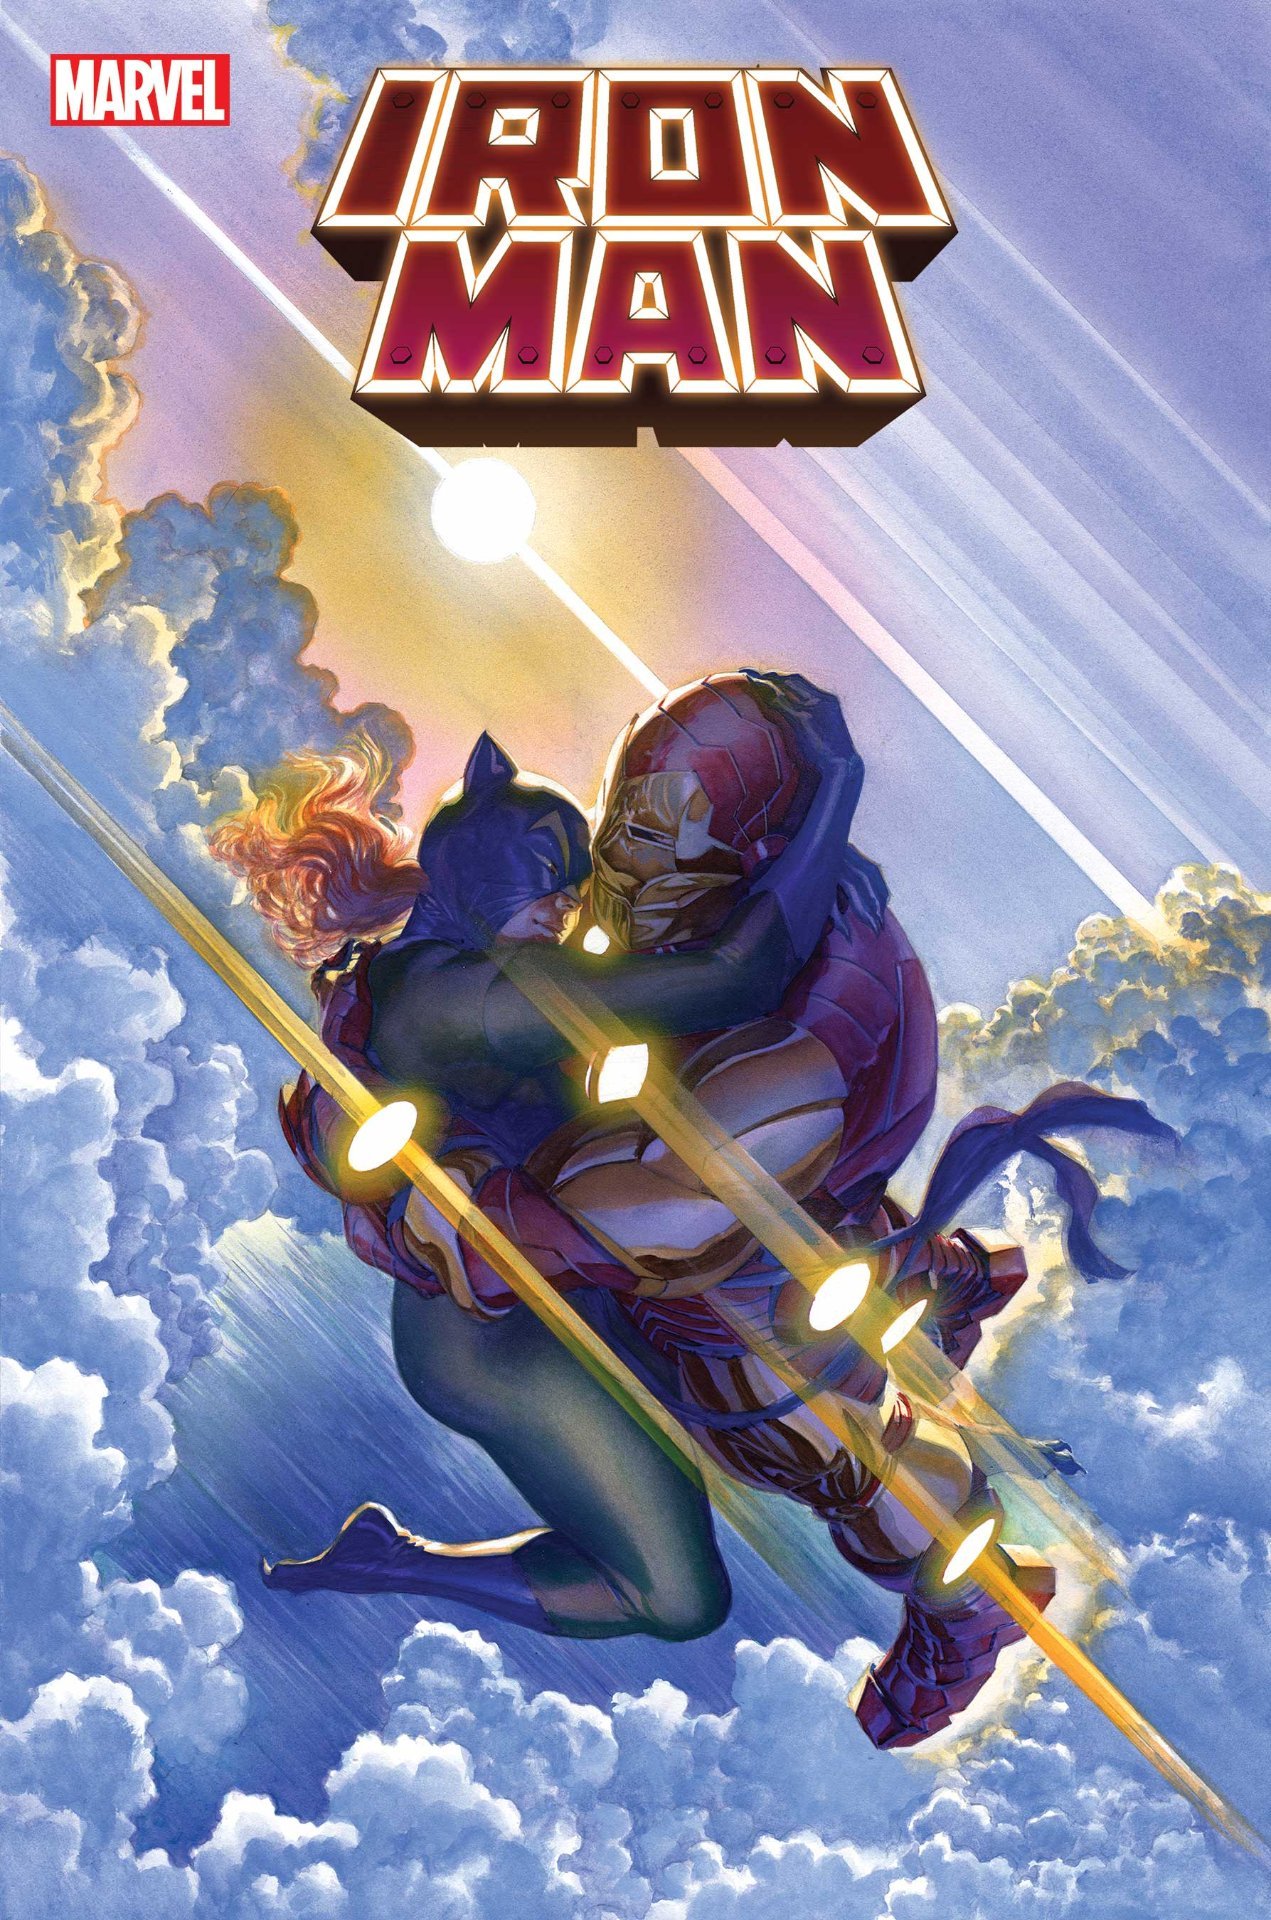 Cover di Iron Man 20 di Alex Ross: Tony Stark si sposa?